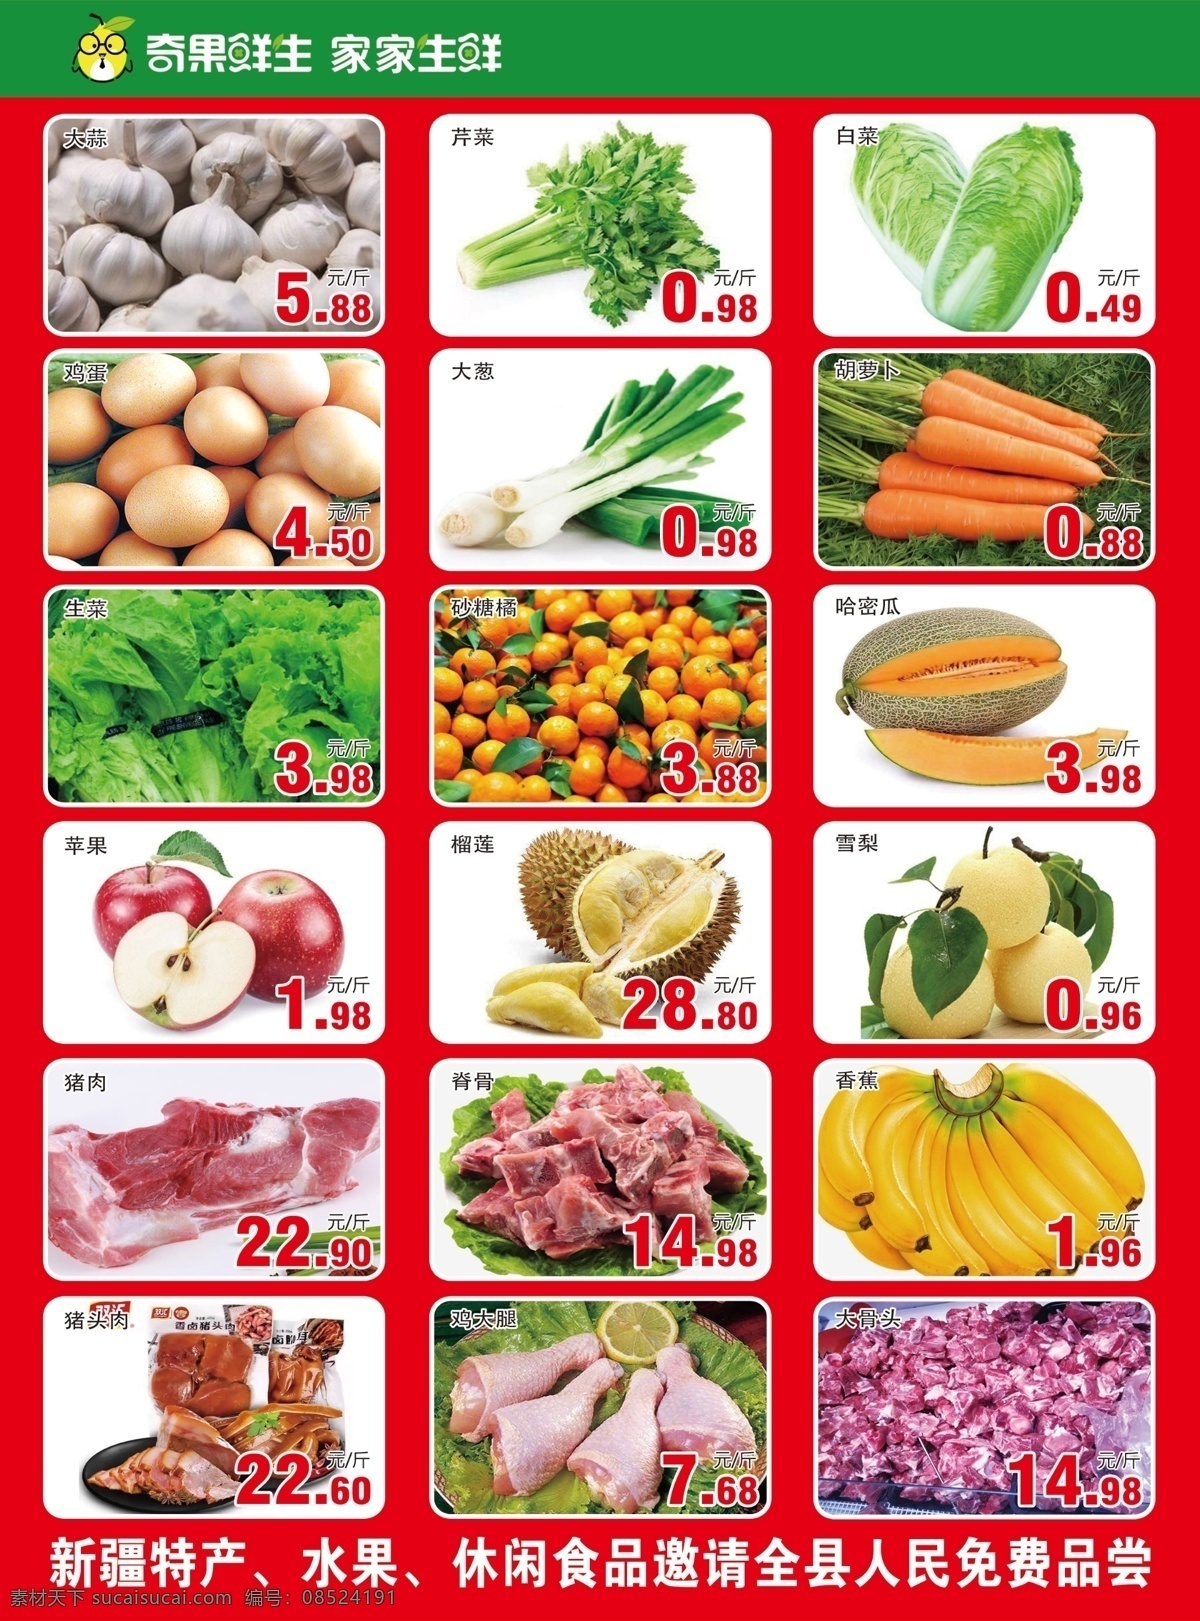 超市传单 传单 超市 海报 价格单 蔬菜 广告 彩页 生鲜超市 分层